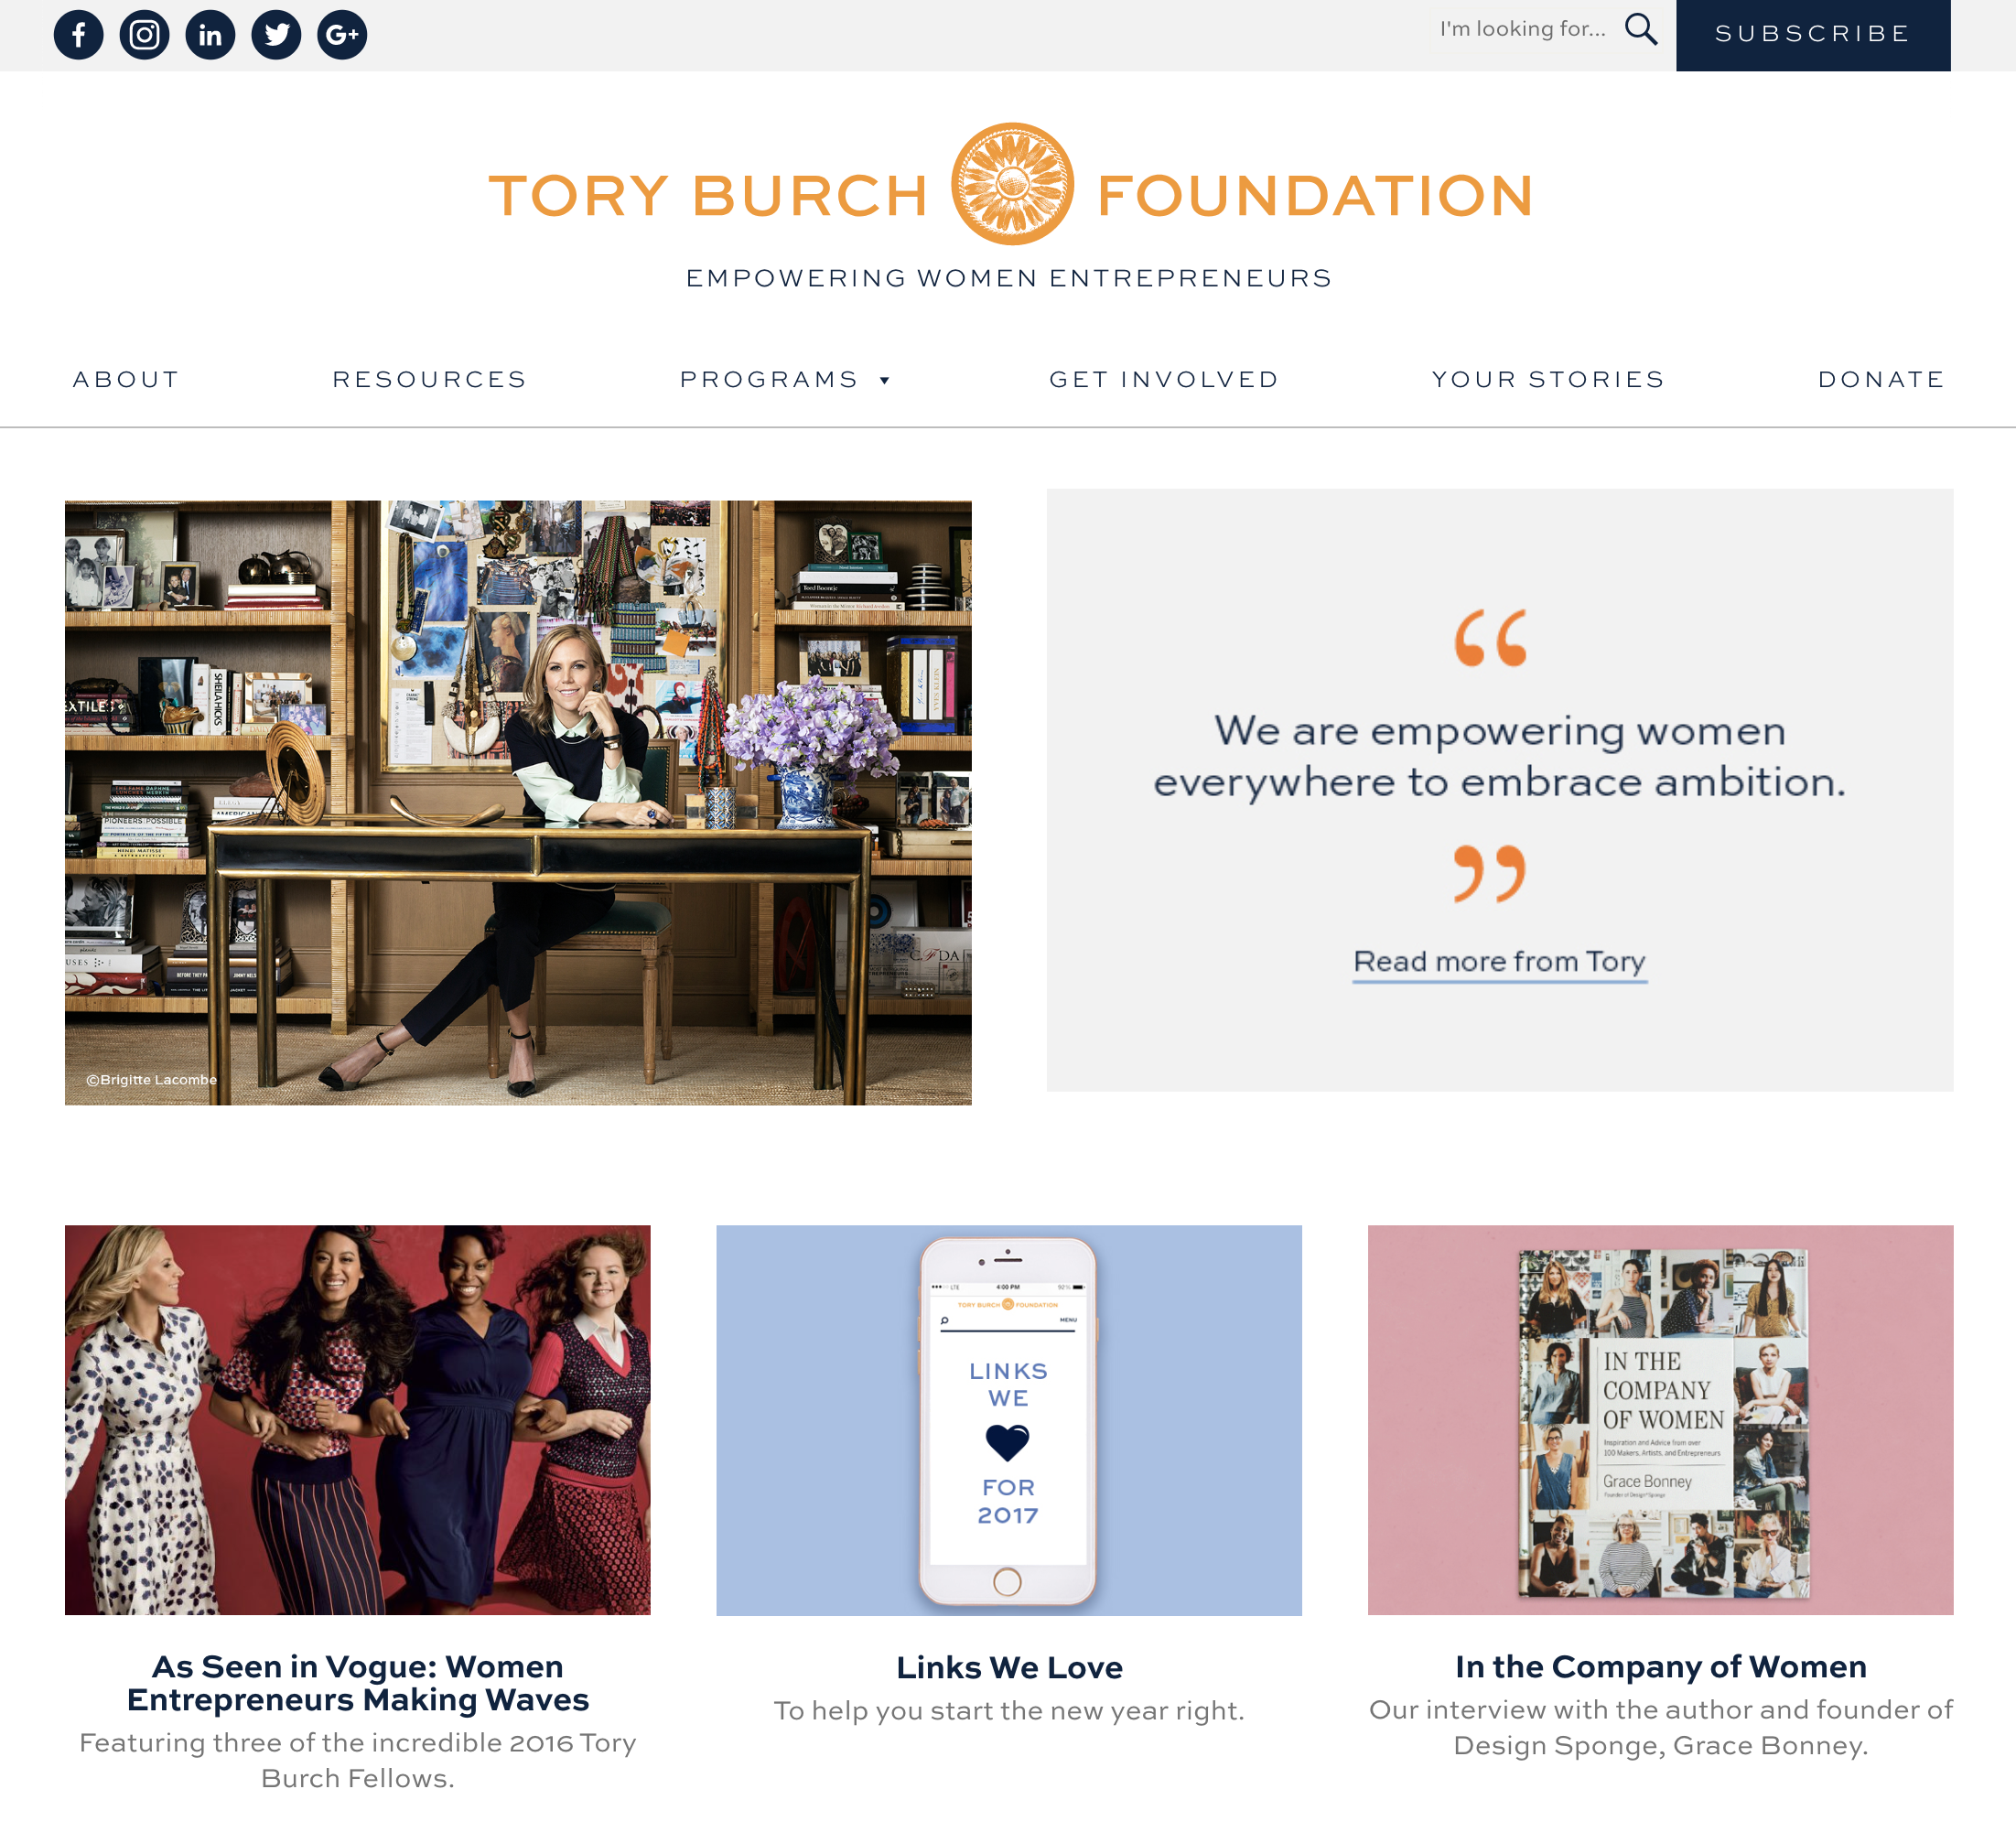 Tory Burch Foundation